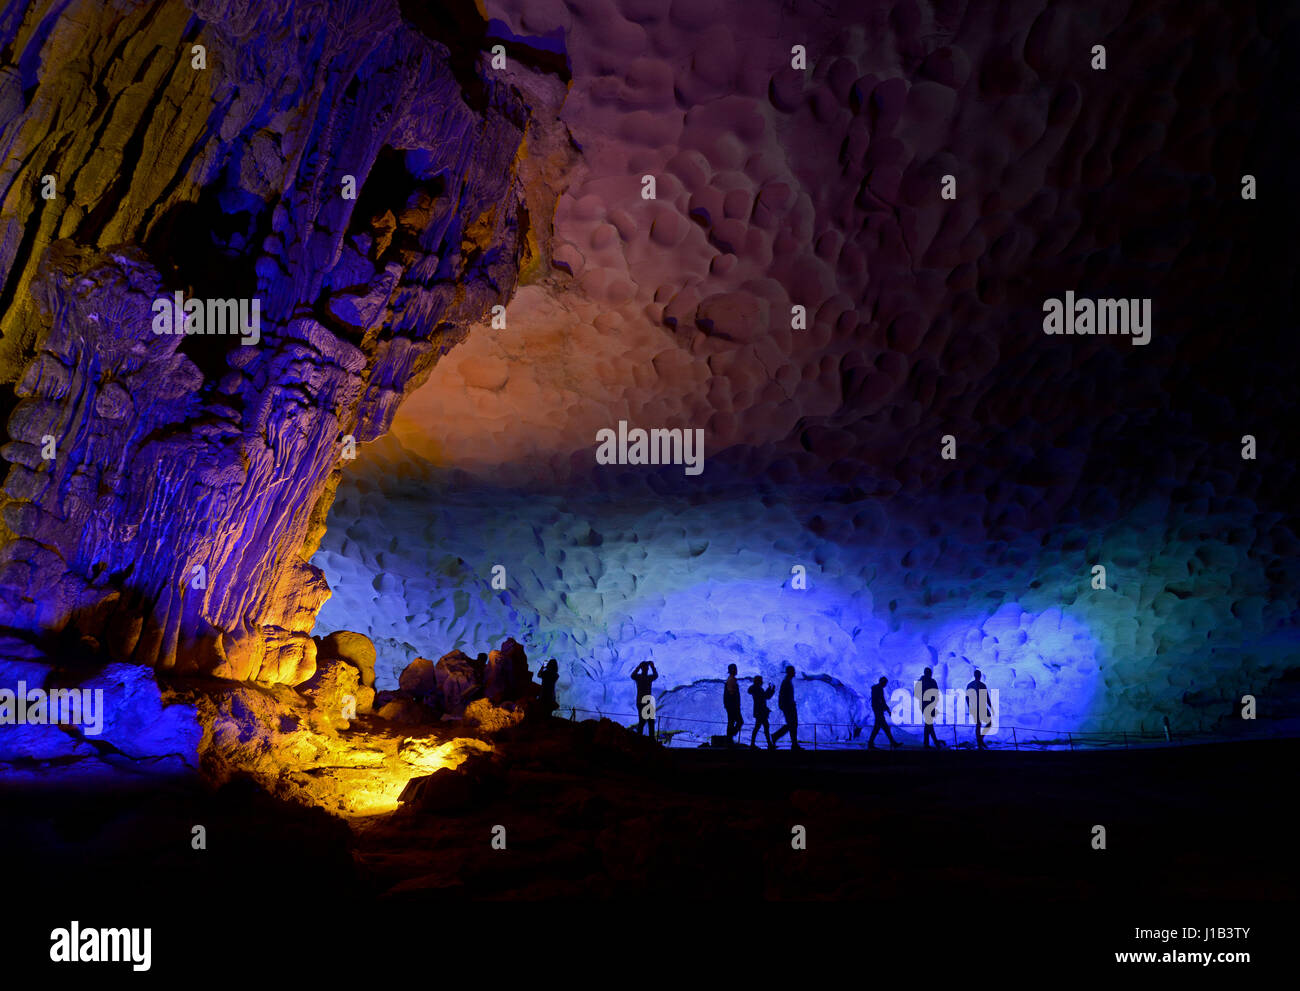 Stagliano i turisti che visitano la Sung Sot grotte (sorprendente grotta) su Bo Hon isola nella baia di Halong, Vietnam, che è un sito Patrimonio Mondiale dell'UNESCO. Foto Stock